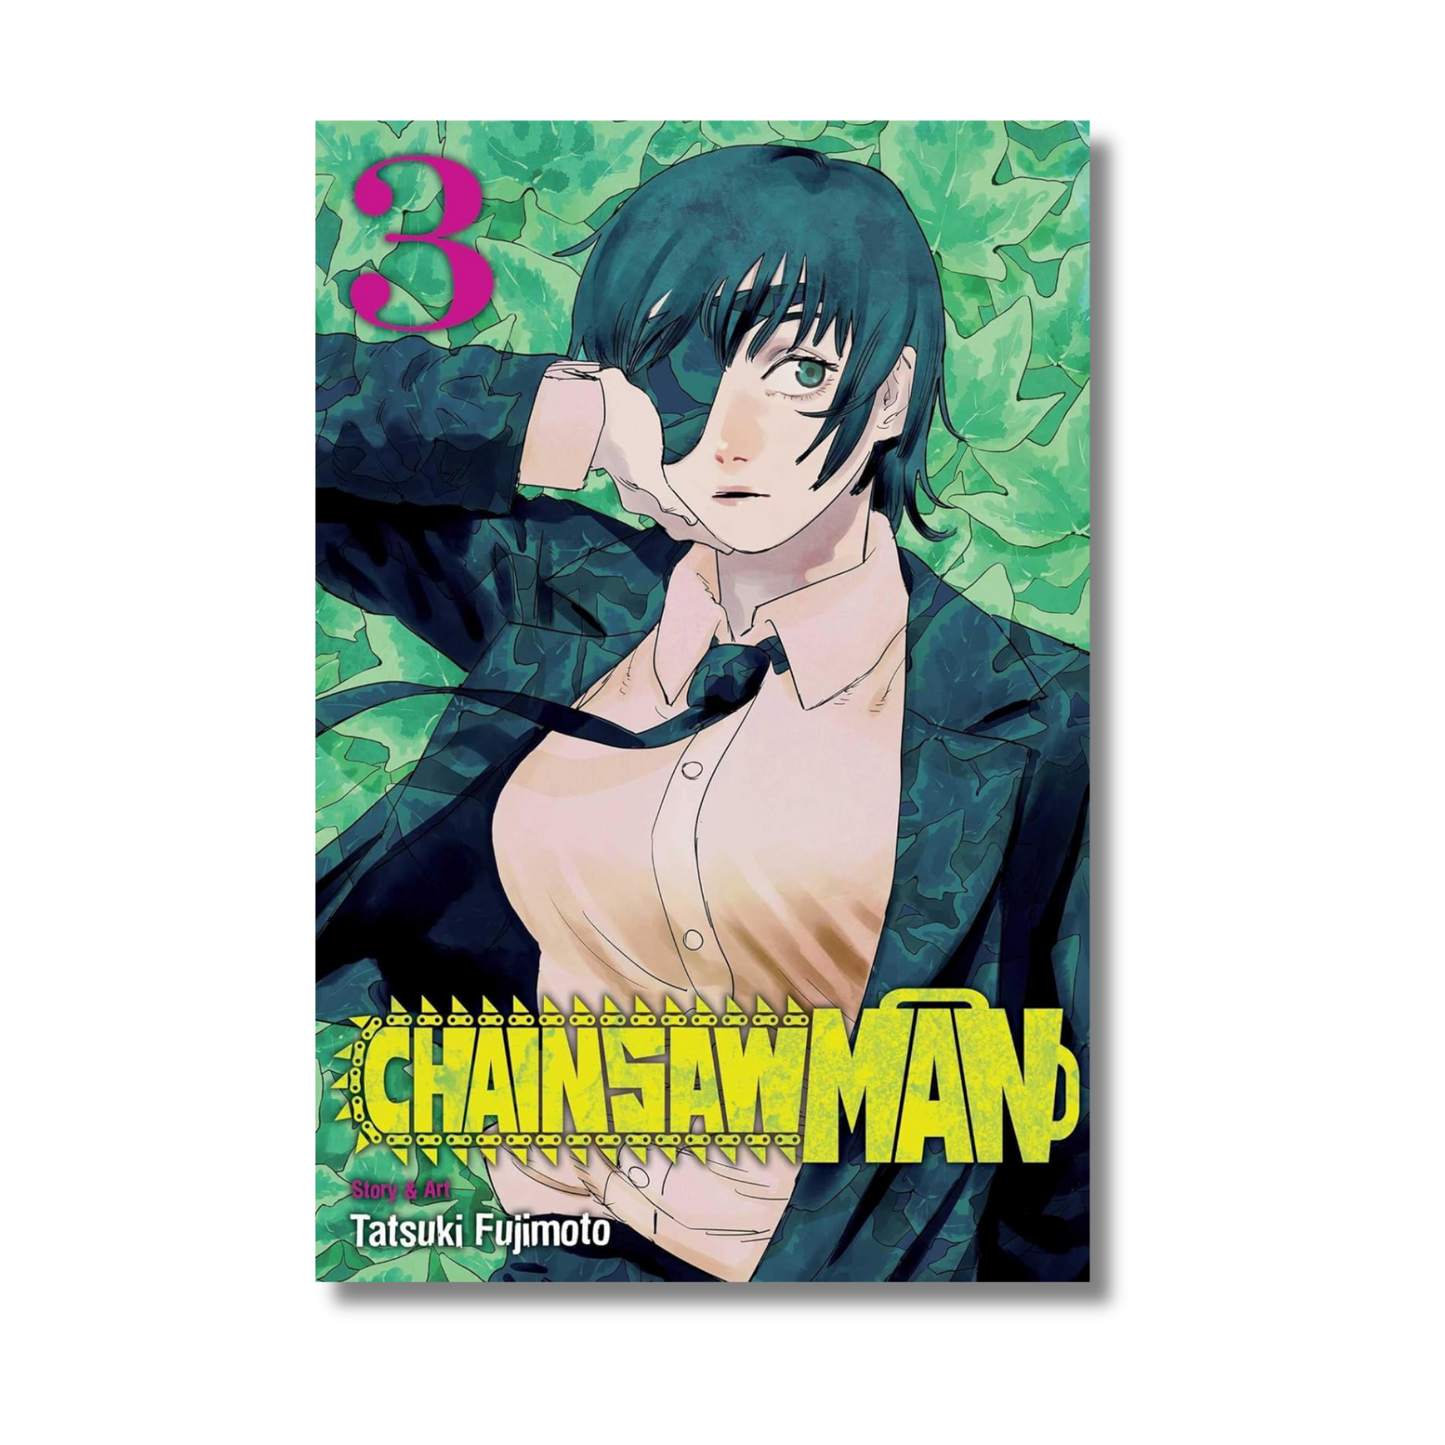 Chainsaw Man Vol. 3 by Tatsuki Fujimoto (Paperback)